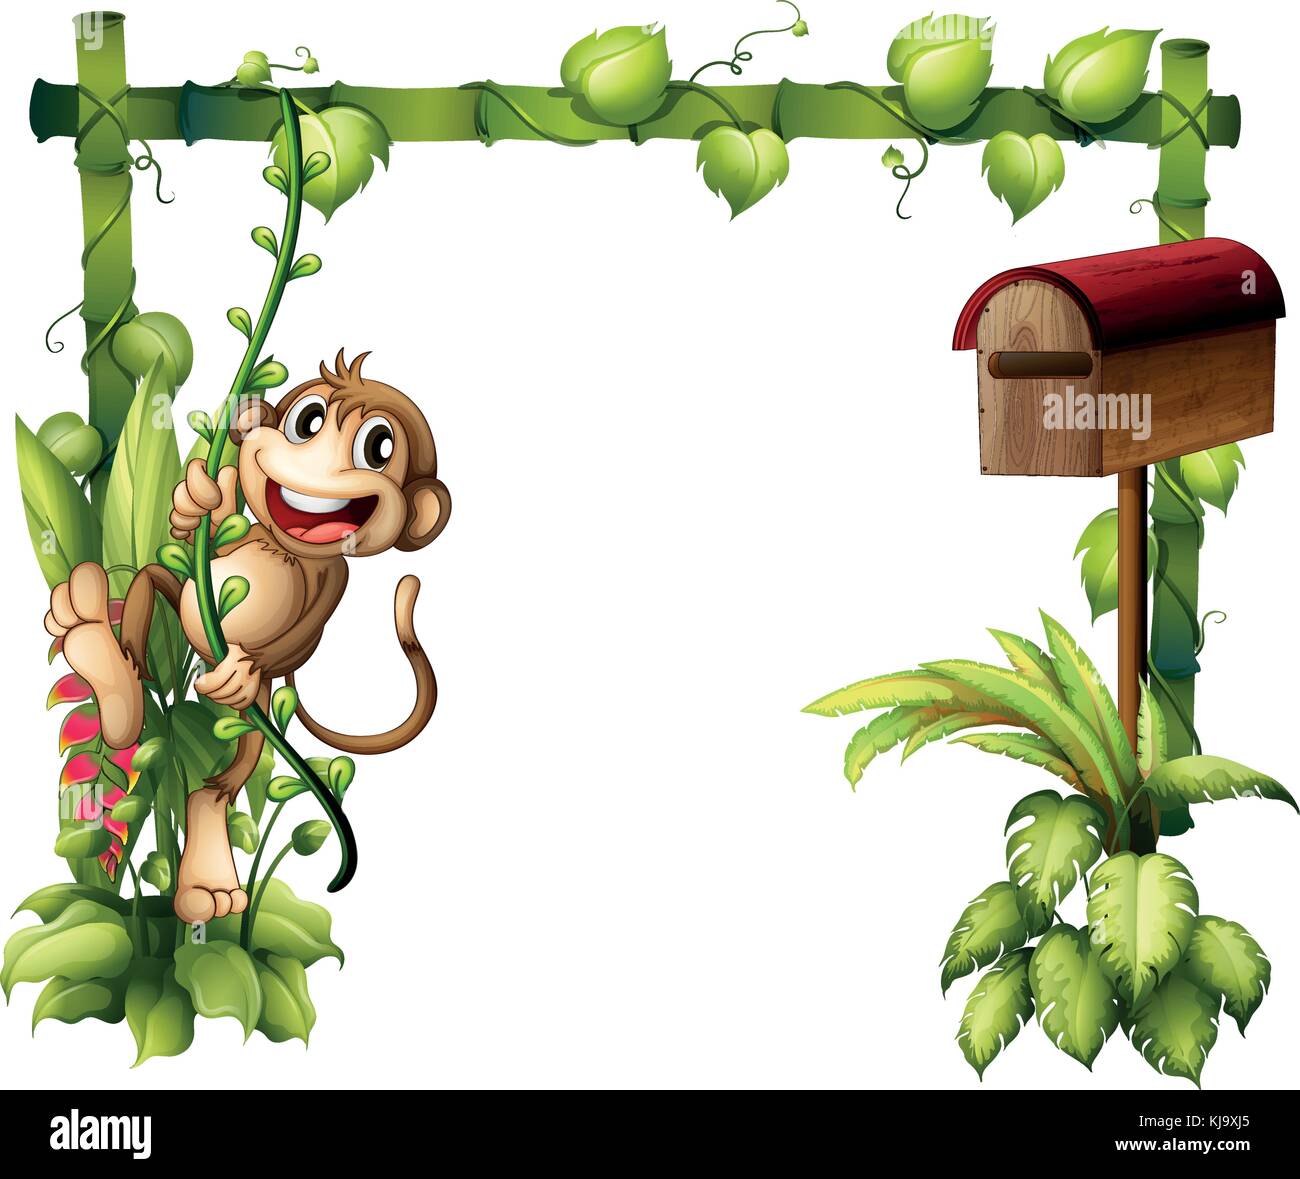 Abbildung: Ein Affe schwingen neben einem hölzernen Mailbox auf einem weißen Hintergrund Stock Vektor